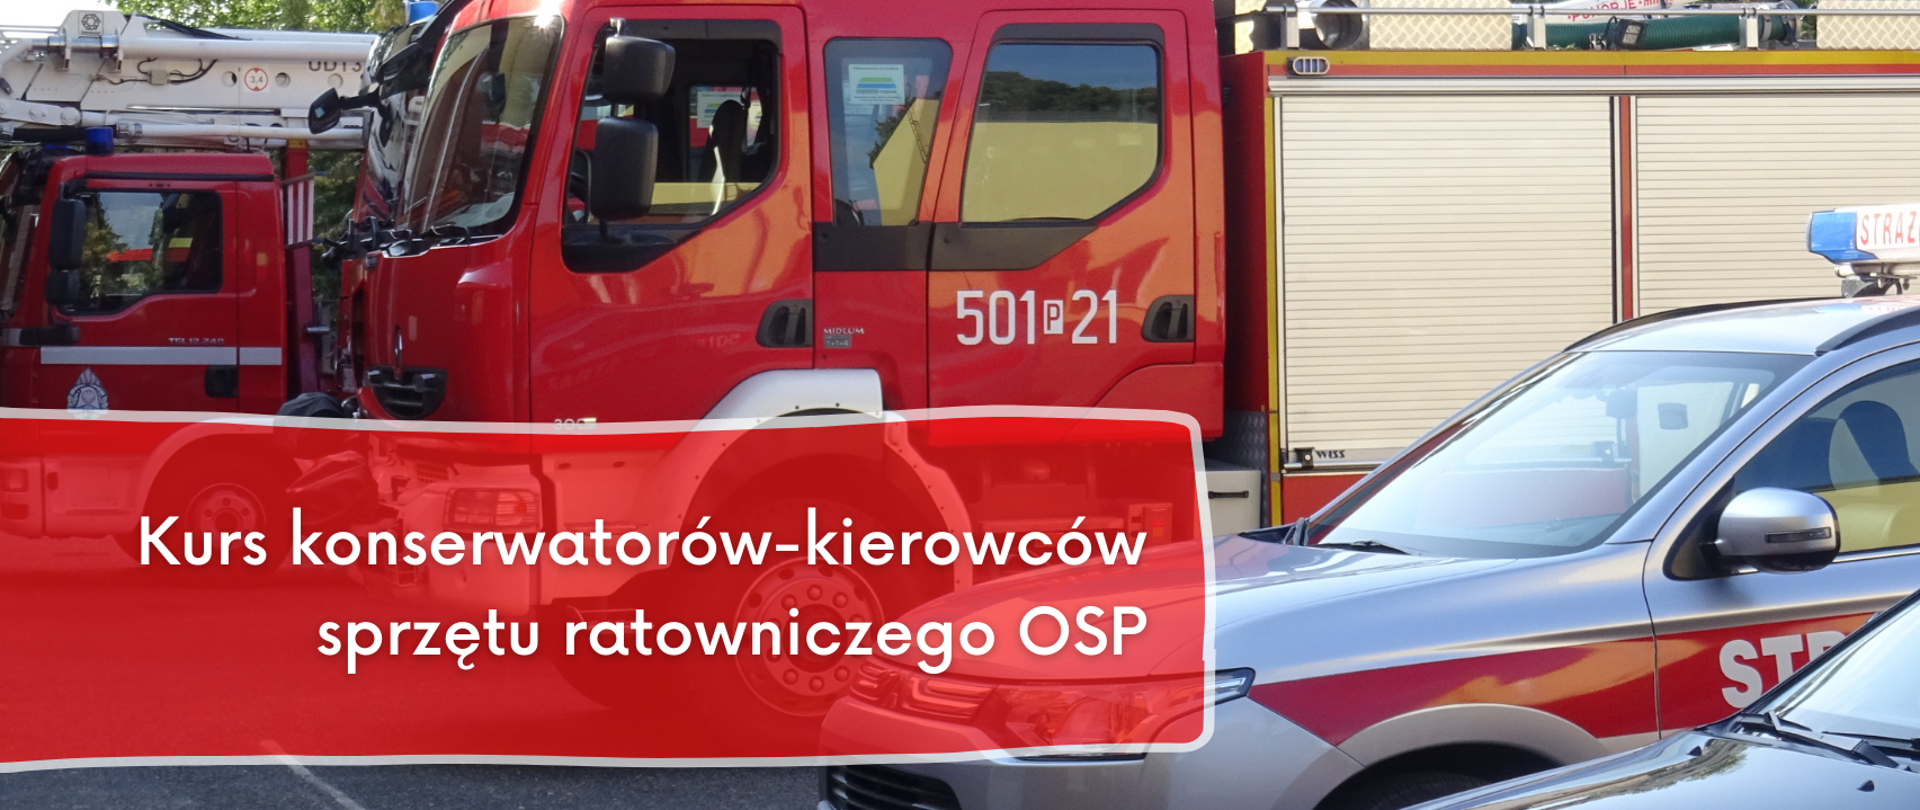 Kurs konserwatorów-kierowców sprzętu ratowniczego OSP